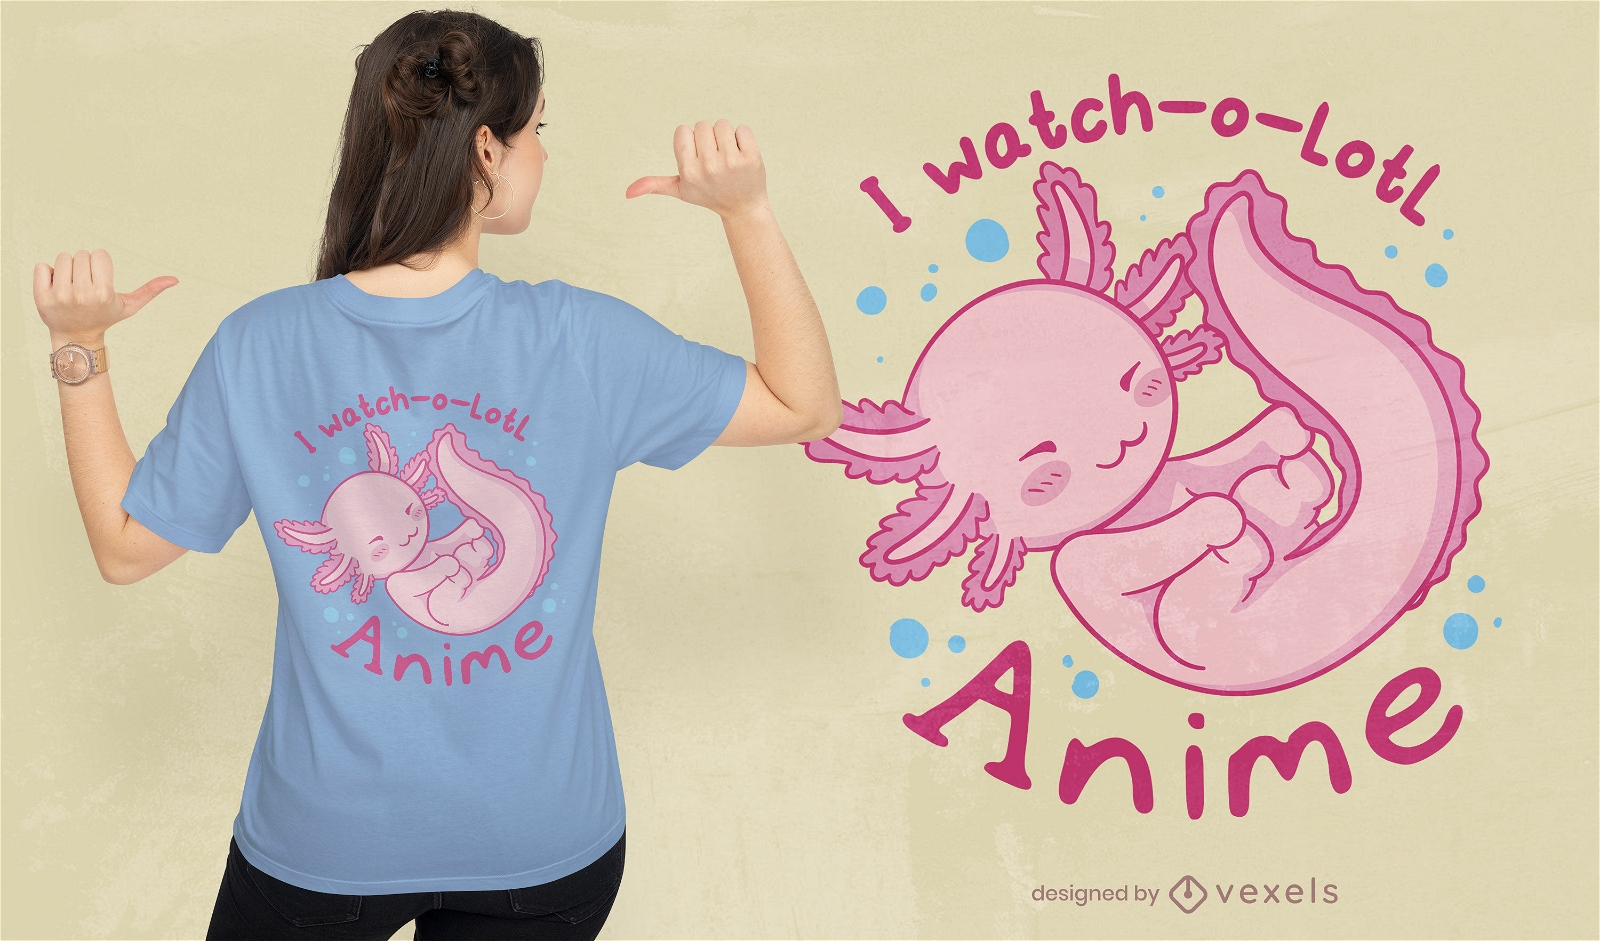 Dise?o lindo de la camiseta del anime del axolotl del beb?